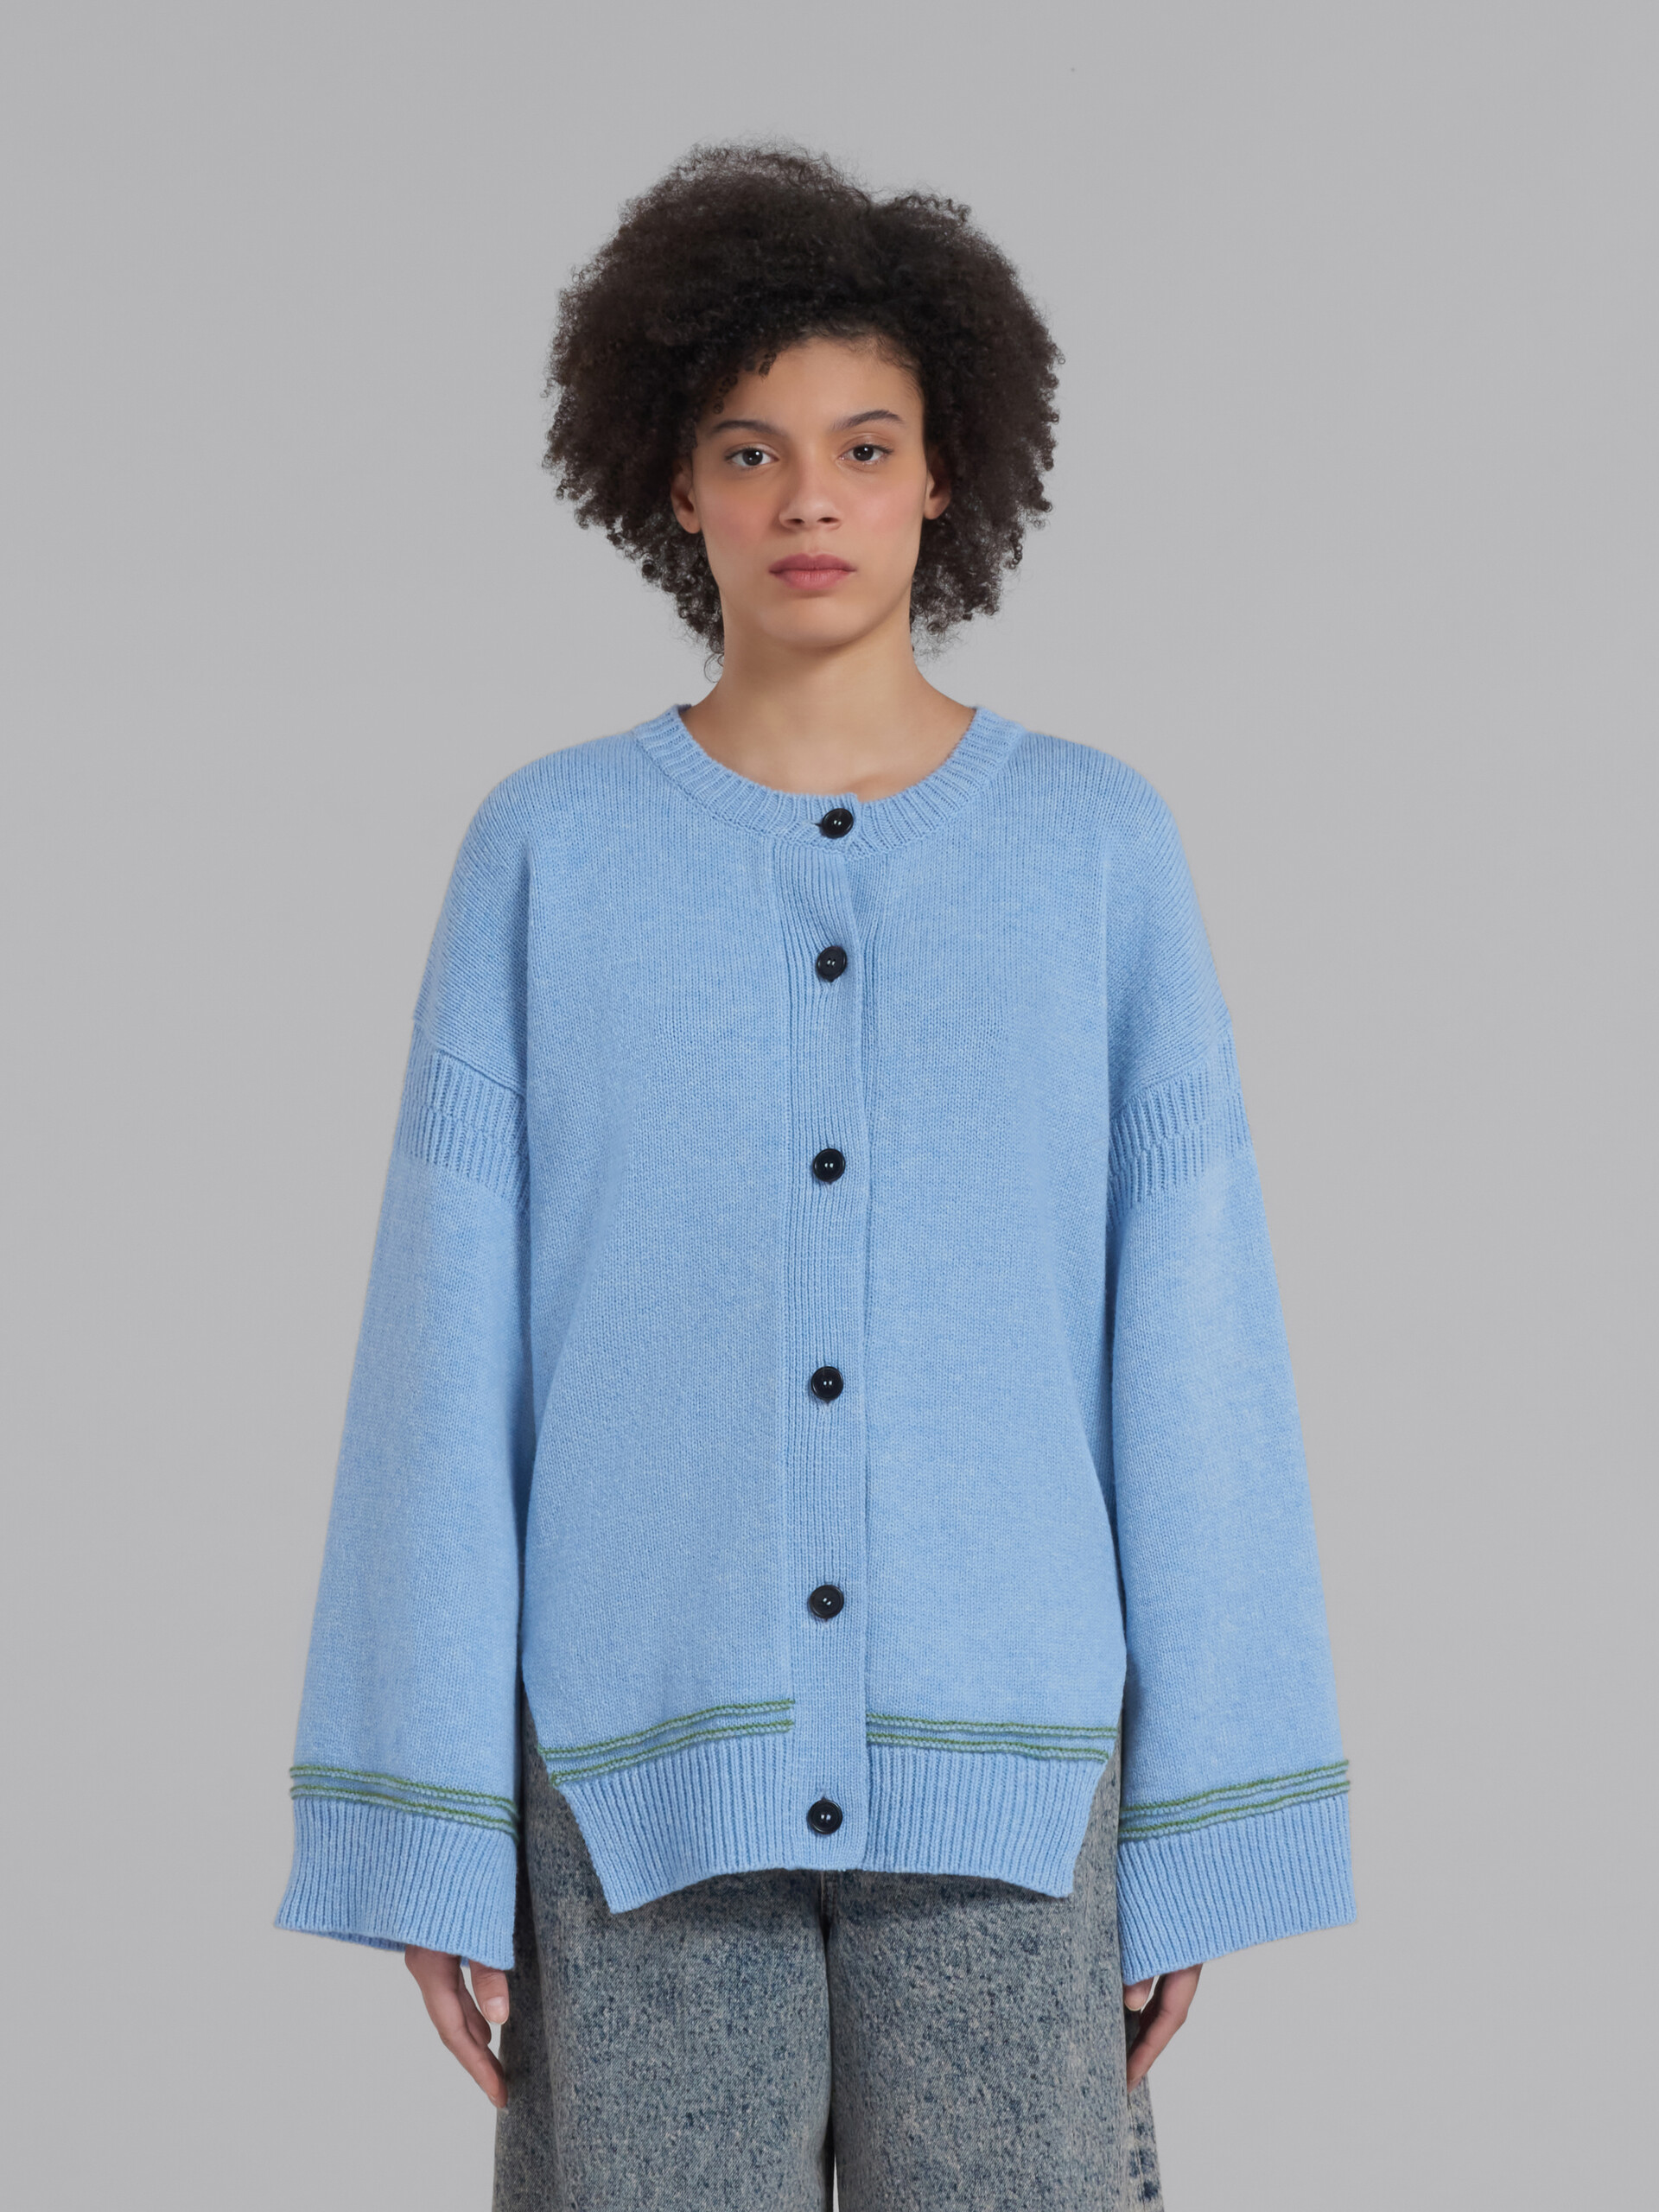 Blauer Cardigan aus Wolle mit Kimono-Ärmeln - Pullover - Image 2